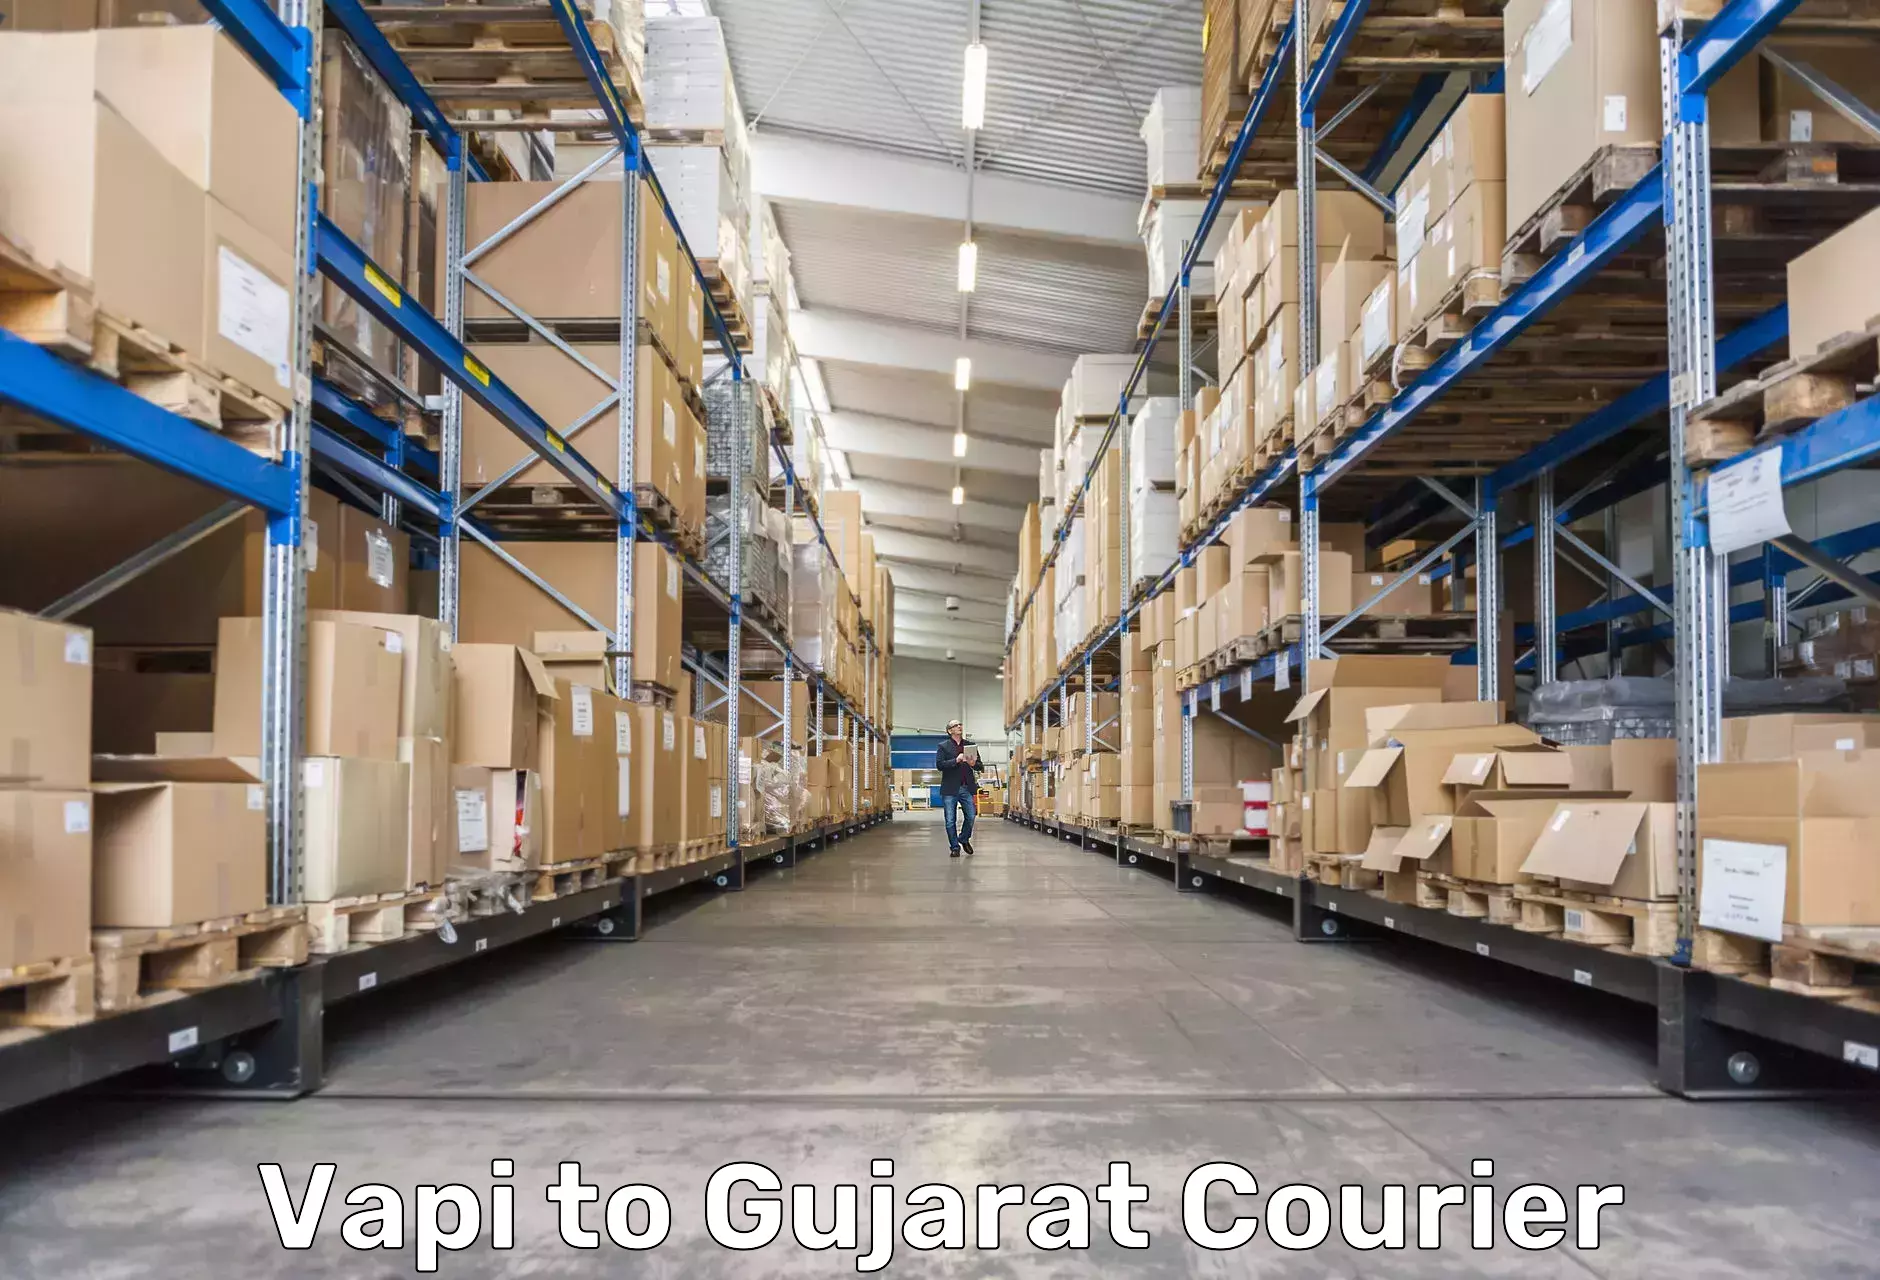 Express courier facilities Vapi to Gujarat